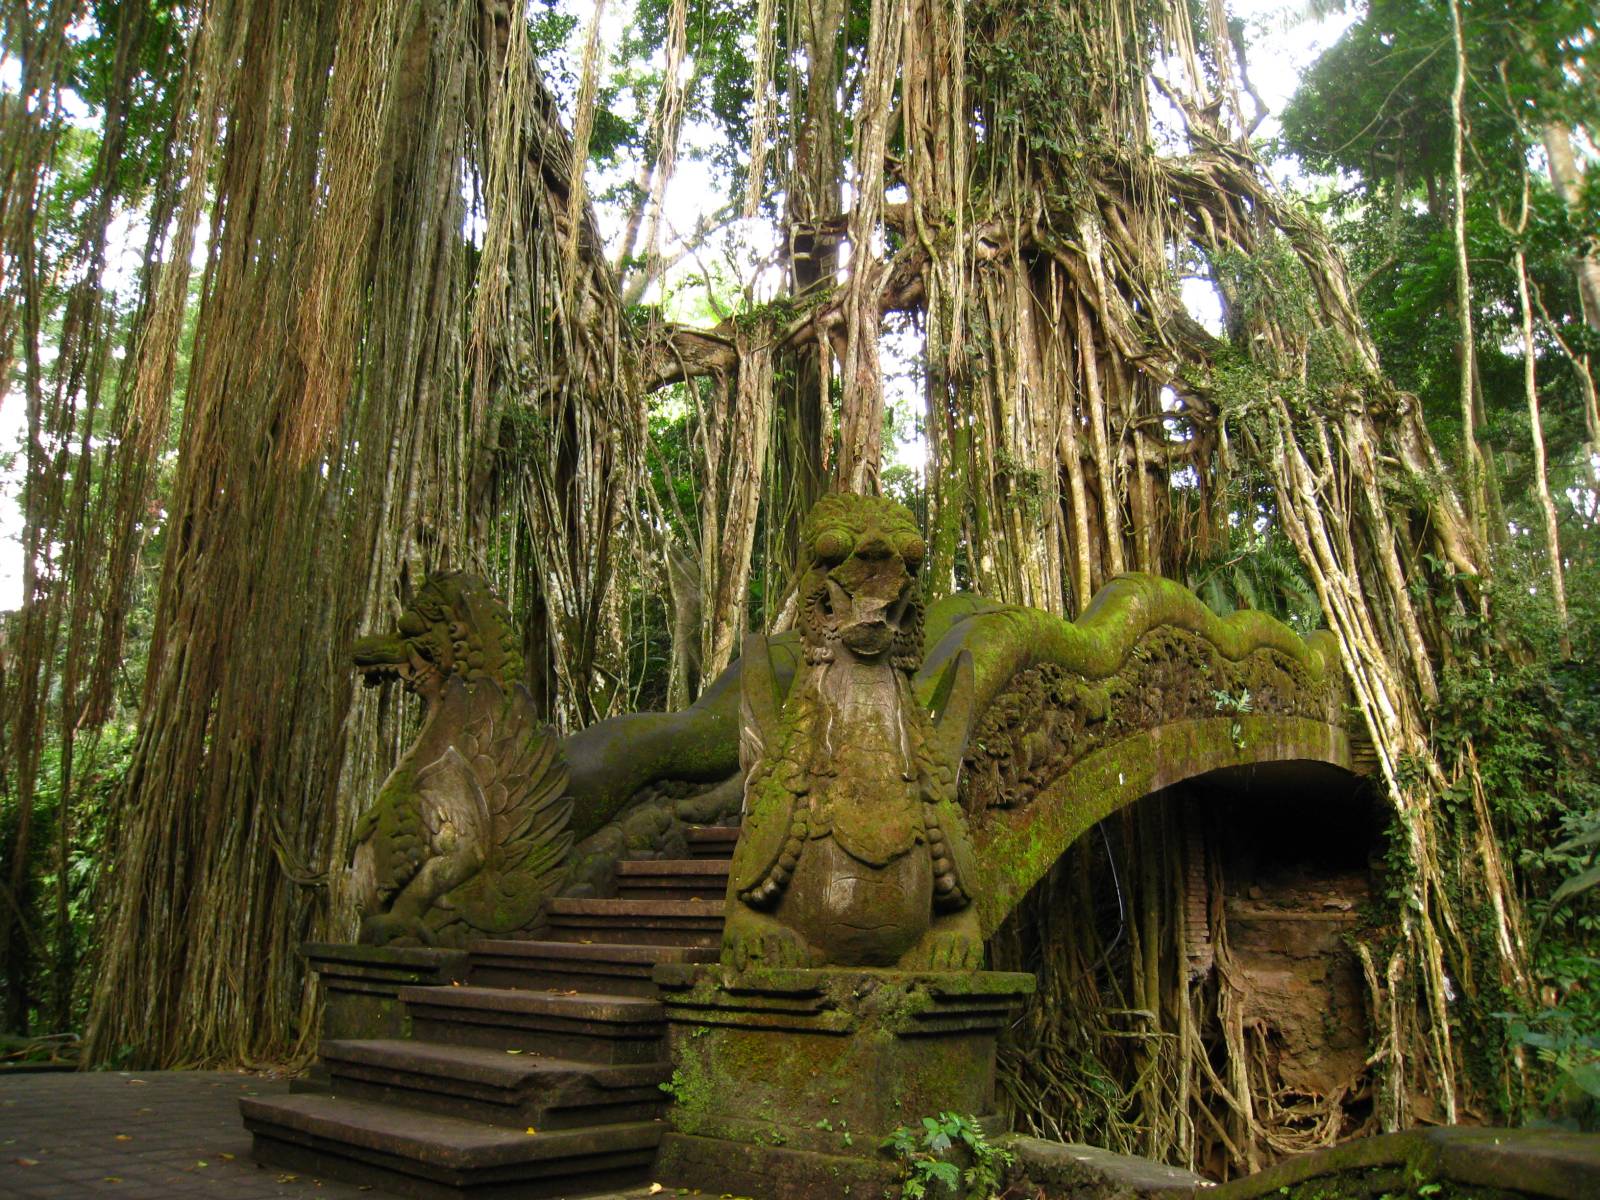 The Ubud Monkey Forest